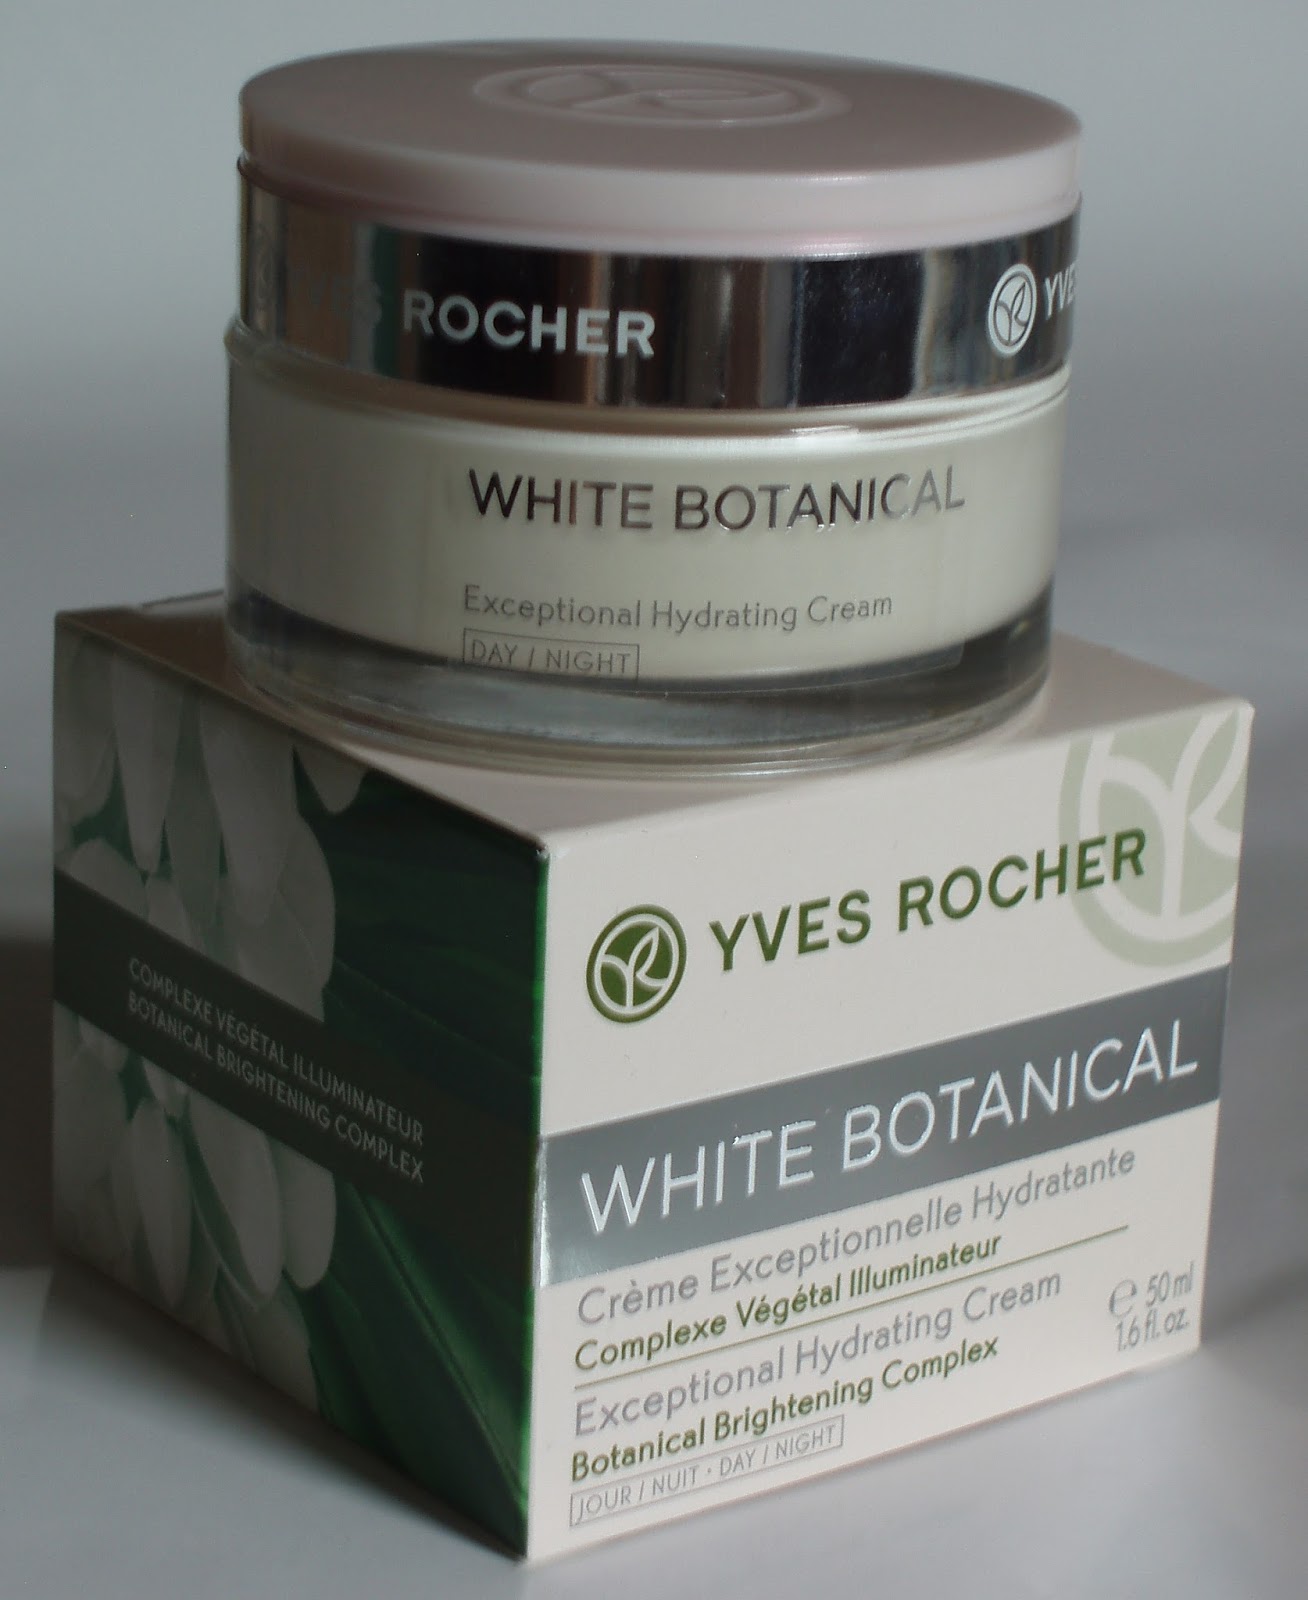 Sparkled Beauty: Yves Rocher White Botanical cream